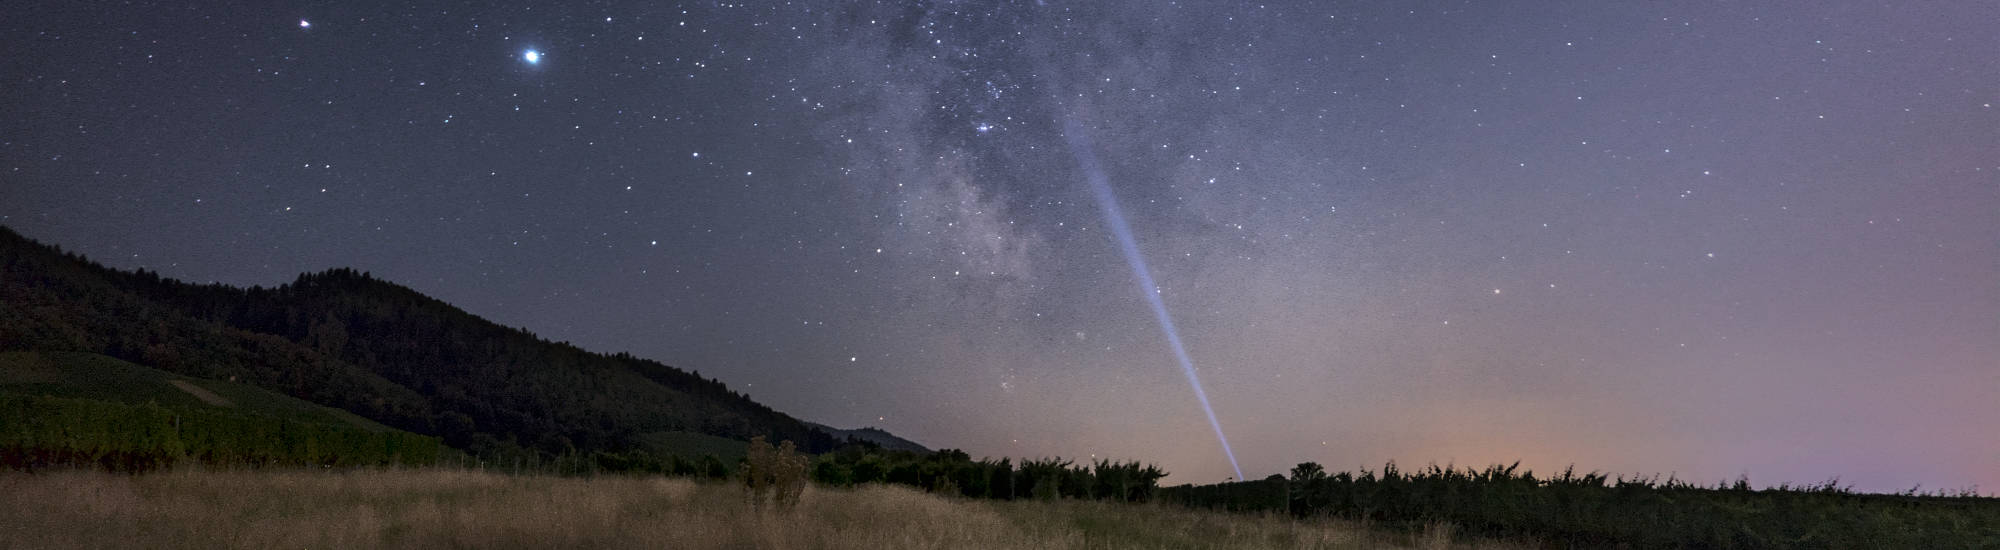 Milchstraße im August 2020, fotografiert mit der Sony RX100 IV.